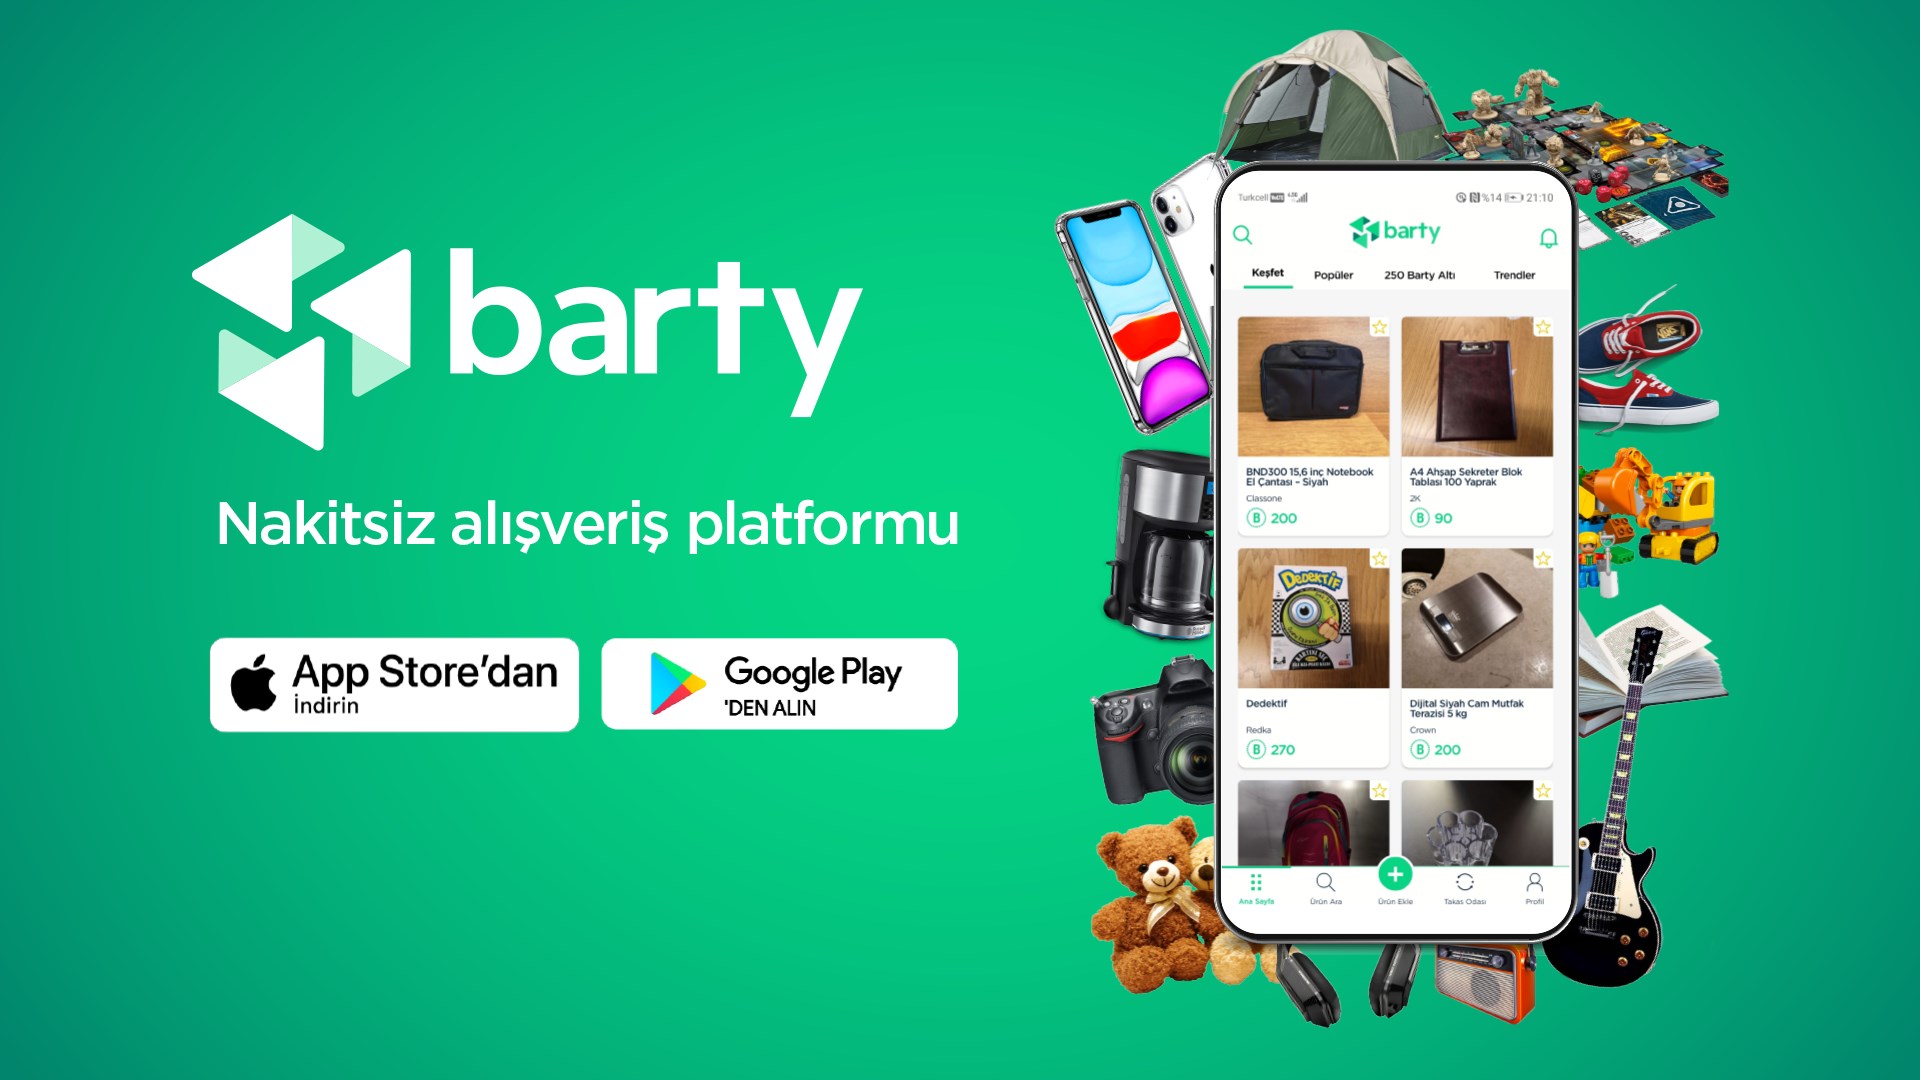 Barty: Nakitsiz yerli alışveriş platformu